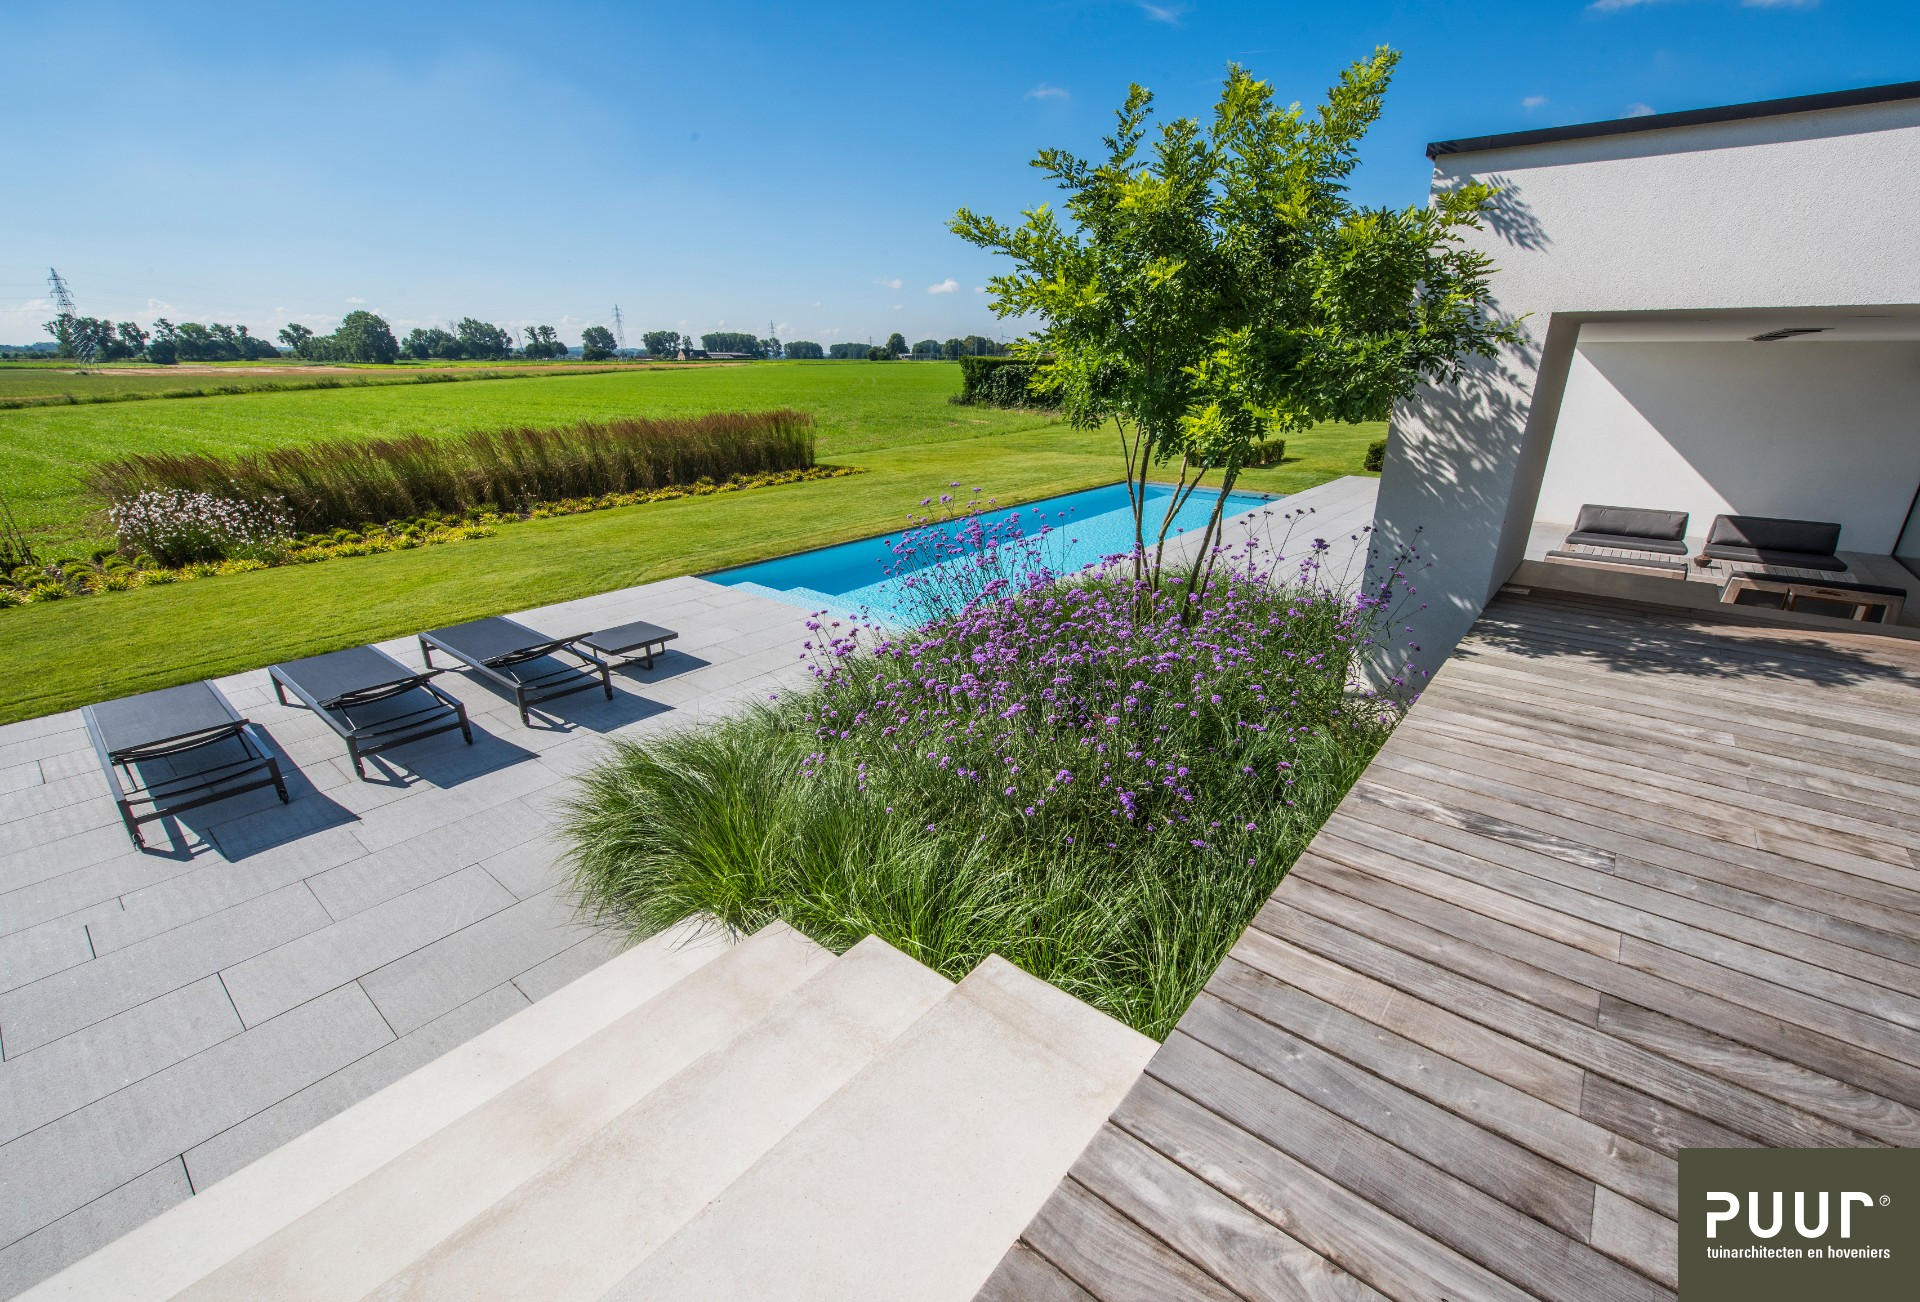 Zwembad bij moderne villa in Liempde - Tuinarchitect, tuinontwerp en tuinaanleg - Puur Groen